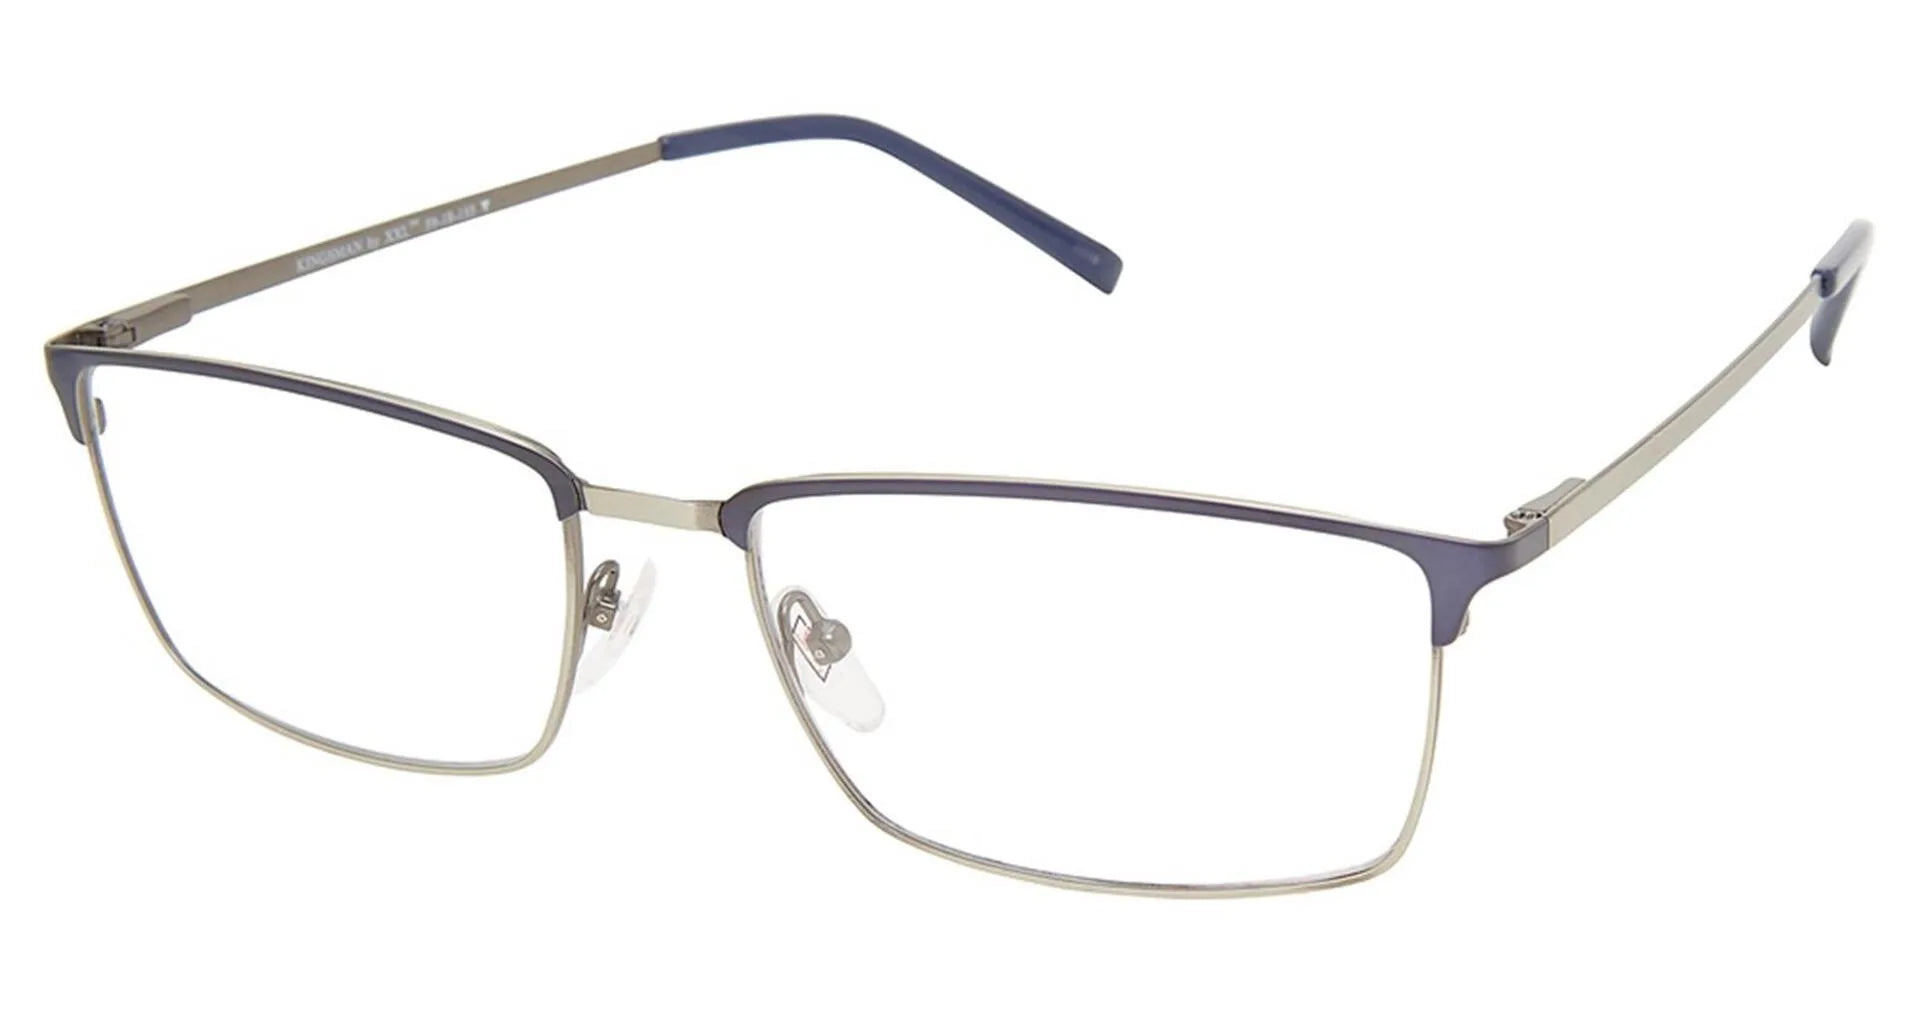 XXL Eyewear Kingsman Eyeglasses Navy